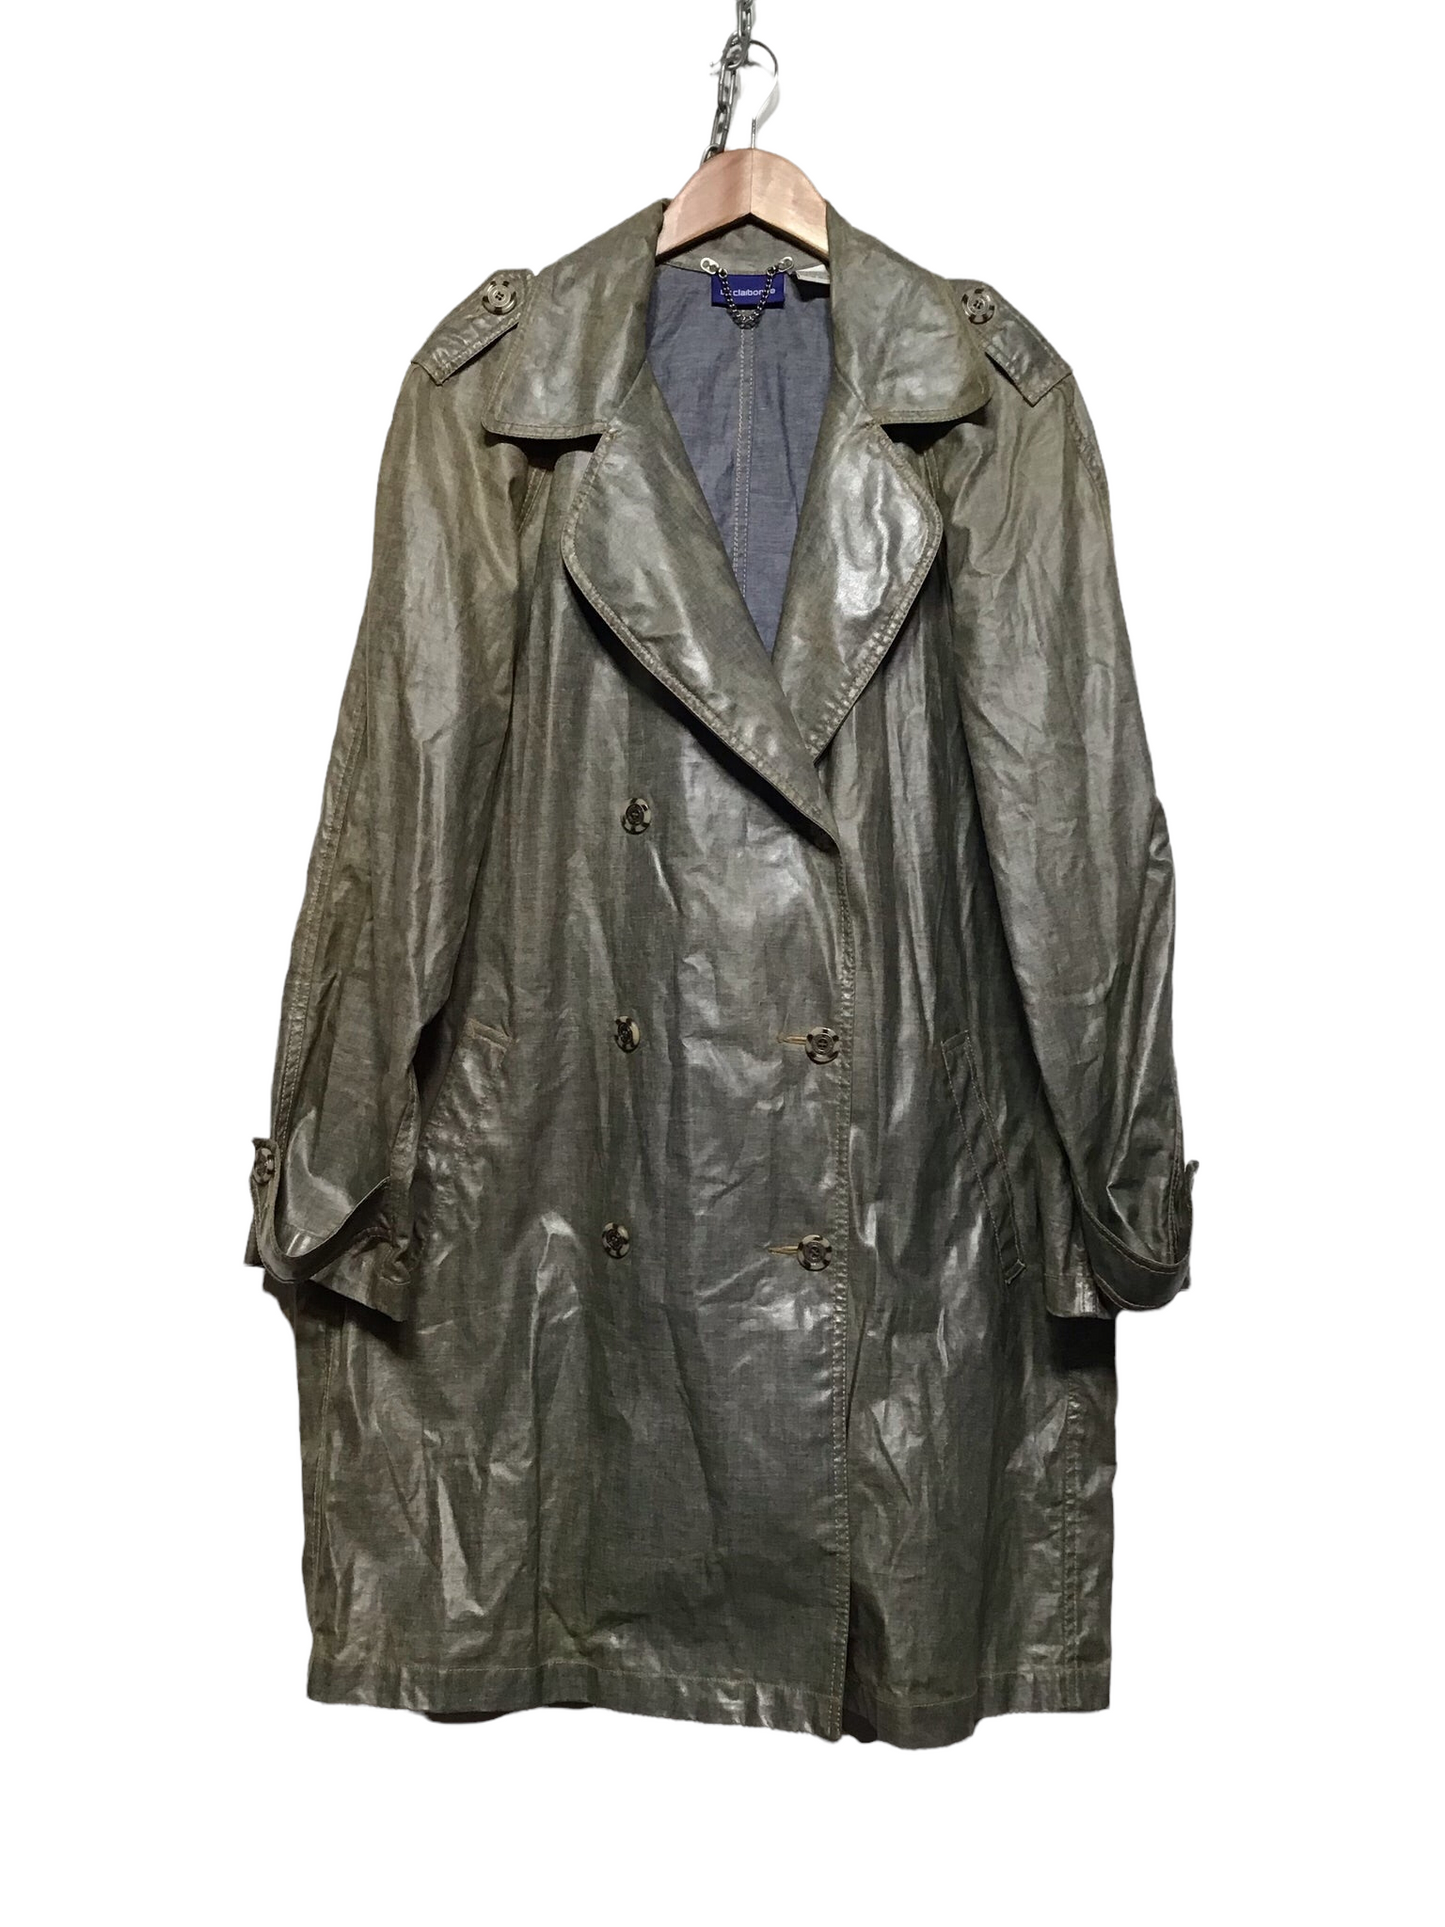 Wet Look Trench Coat (Women's Size M)